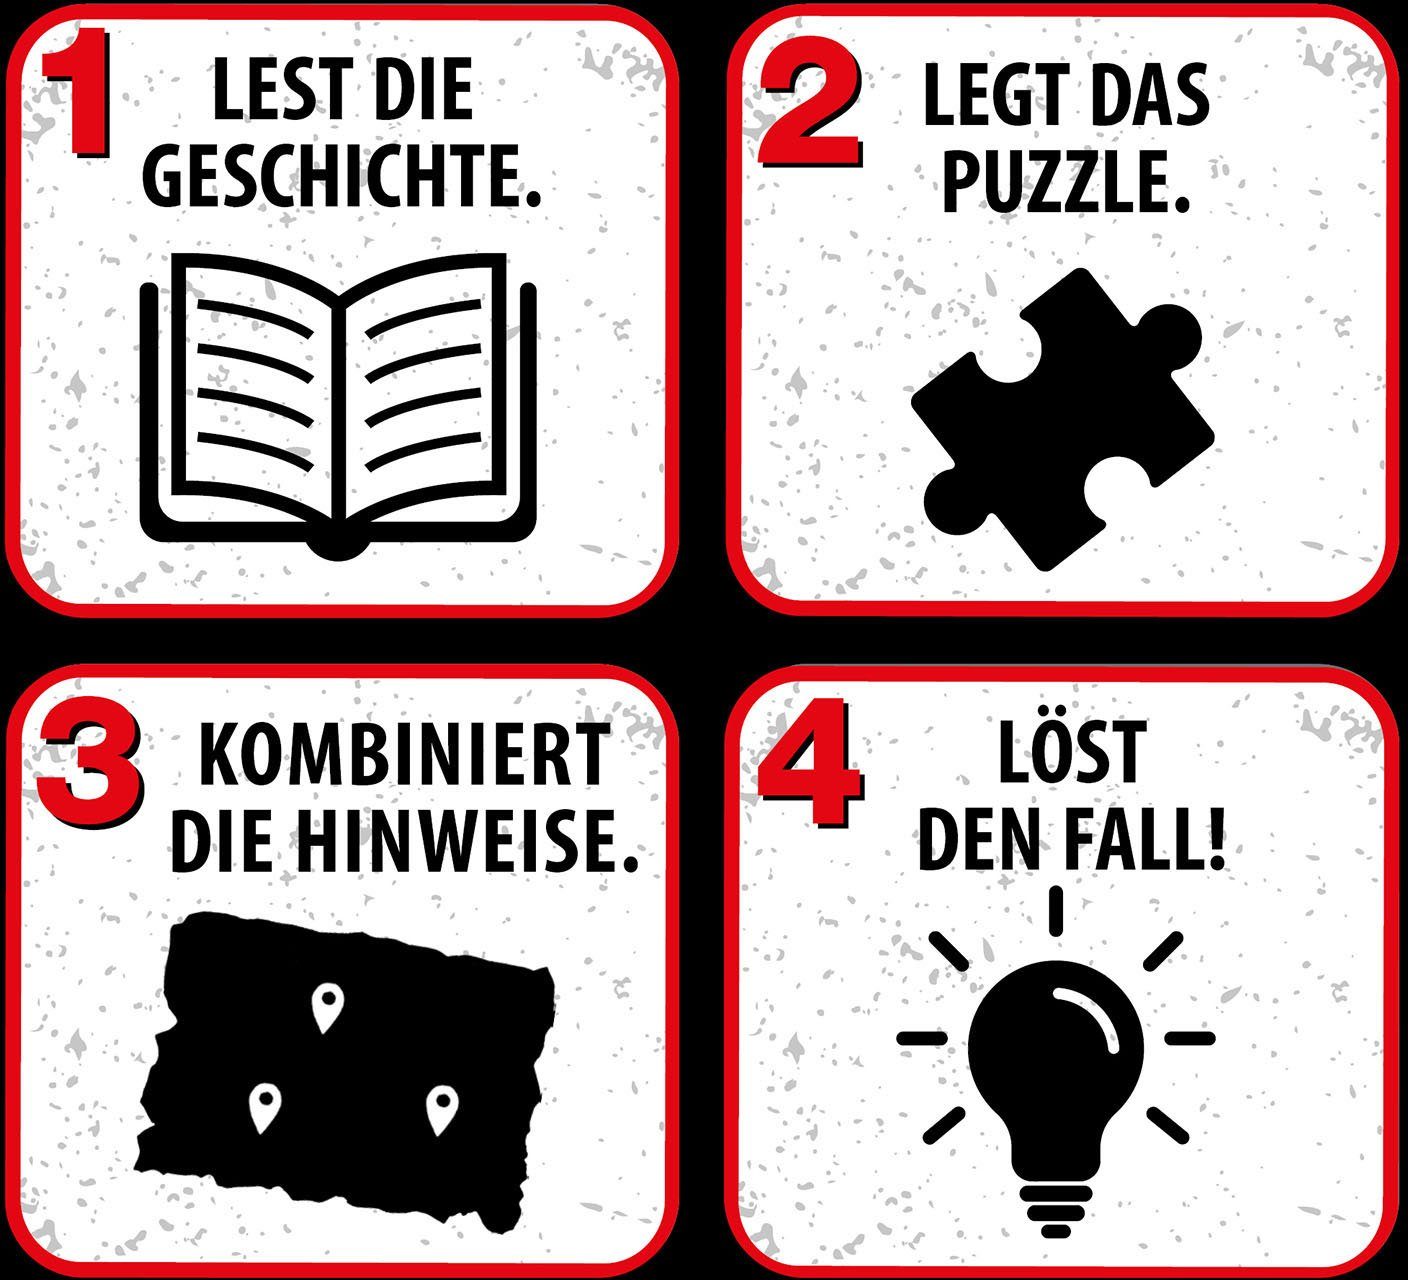 Kosmos Puzzle Made Kids Achtung, Krimipuzzle Meeresungeheuer!, Germany 150 Puzzleteile, ??? Die in drei